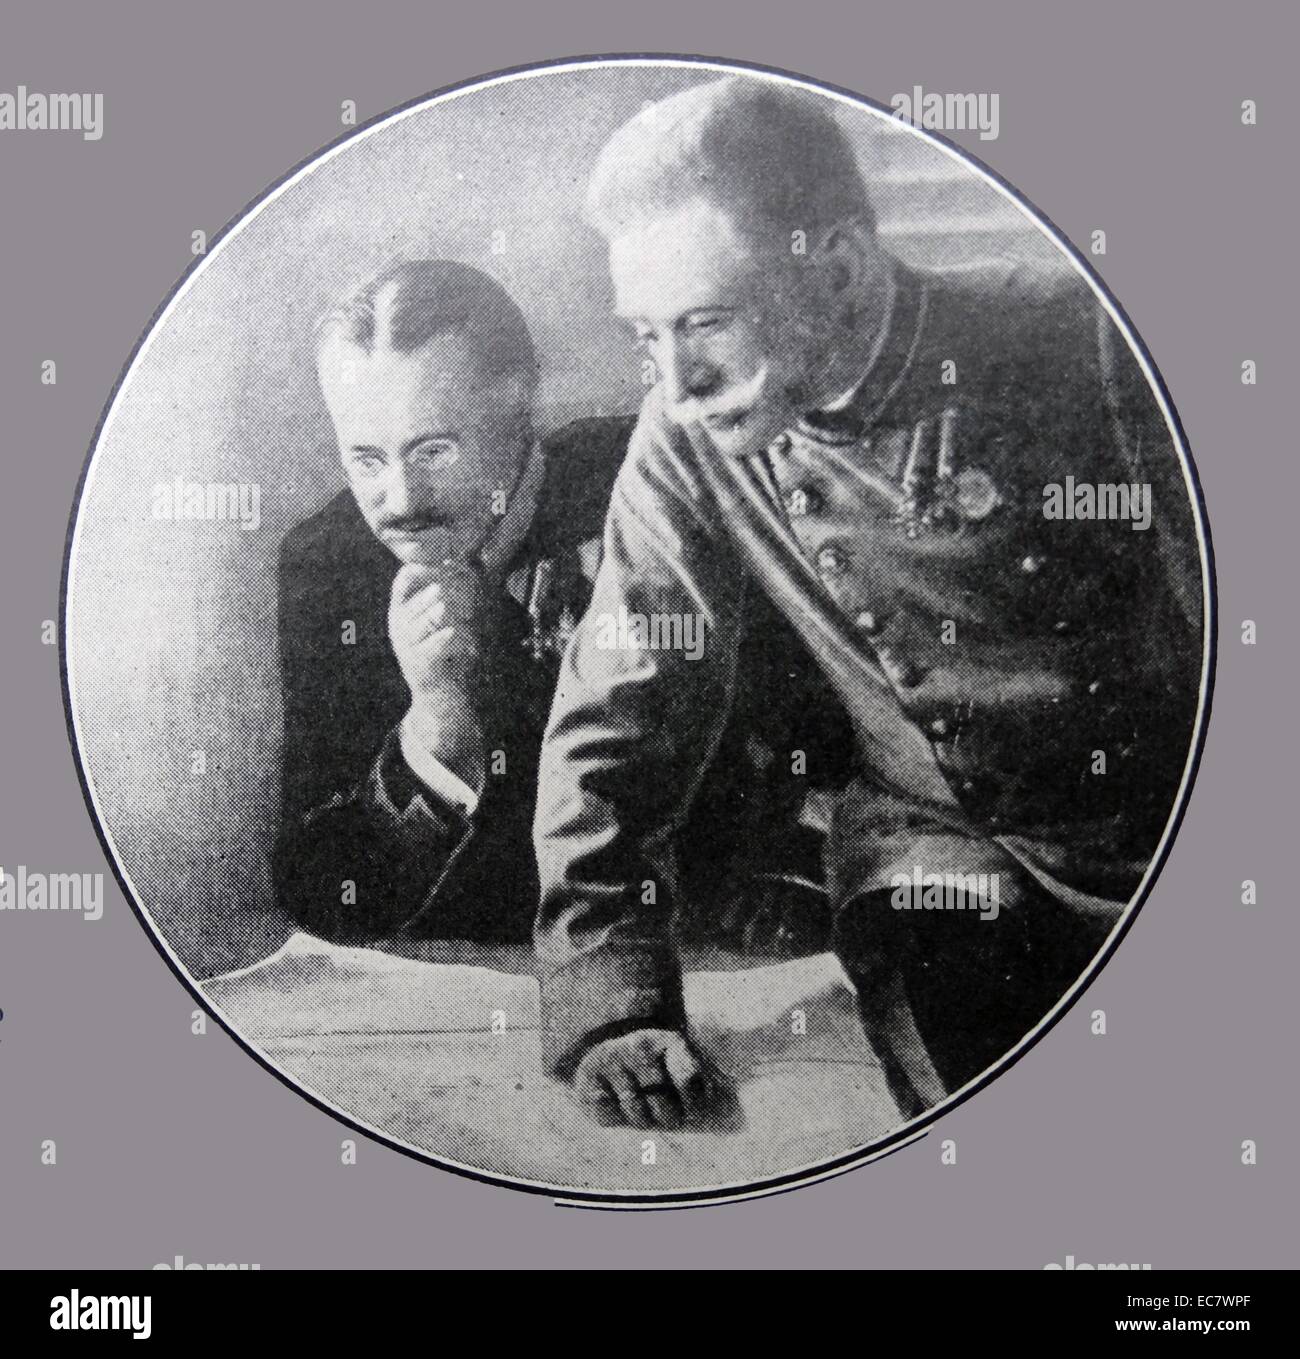 Général Franz Conrad von Hötzendorf (1852 - 1925) ; parfois l'épeautre Hoetzendorf. Officier autrichien et chef de l'état-major général de l'Autriche-Hongrie au début de la Première Guerre mondiale Banque D'Images